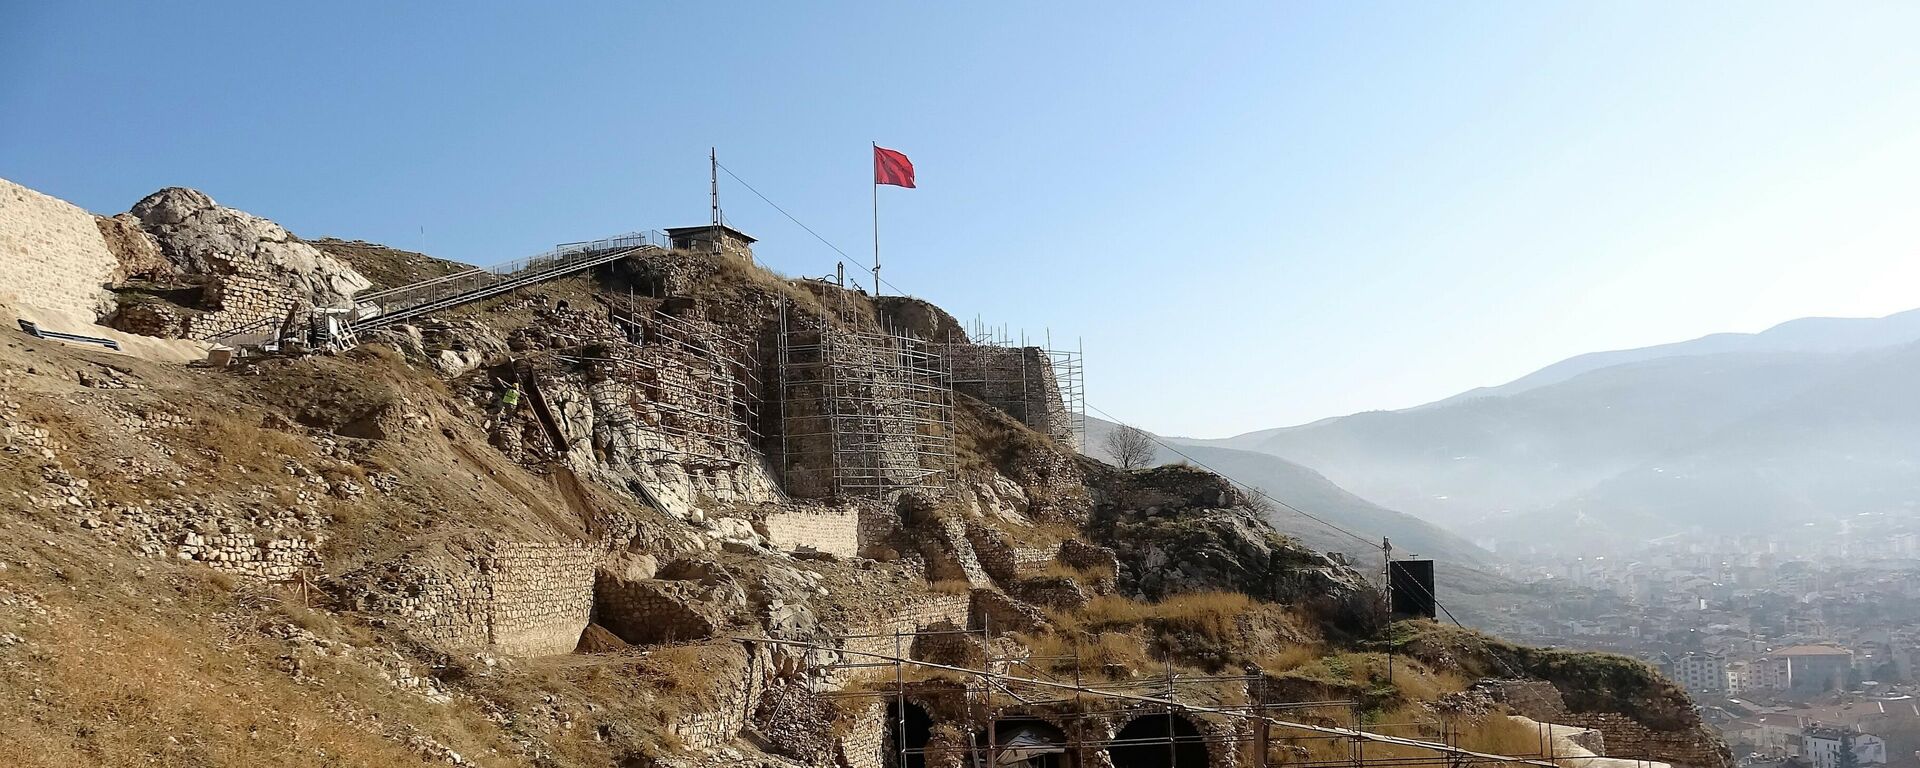 Kont Drakula'nın Tokat'ta esir tutulduğu kale turizme kazandırılacak - Sputnik Türkiye, 1920, 20.01.2022